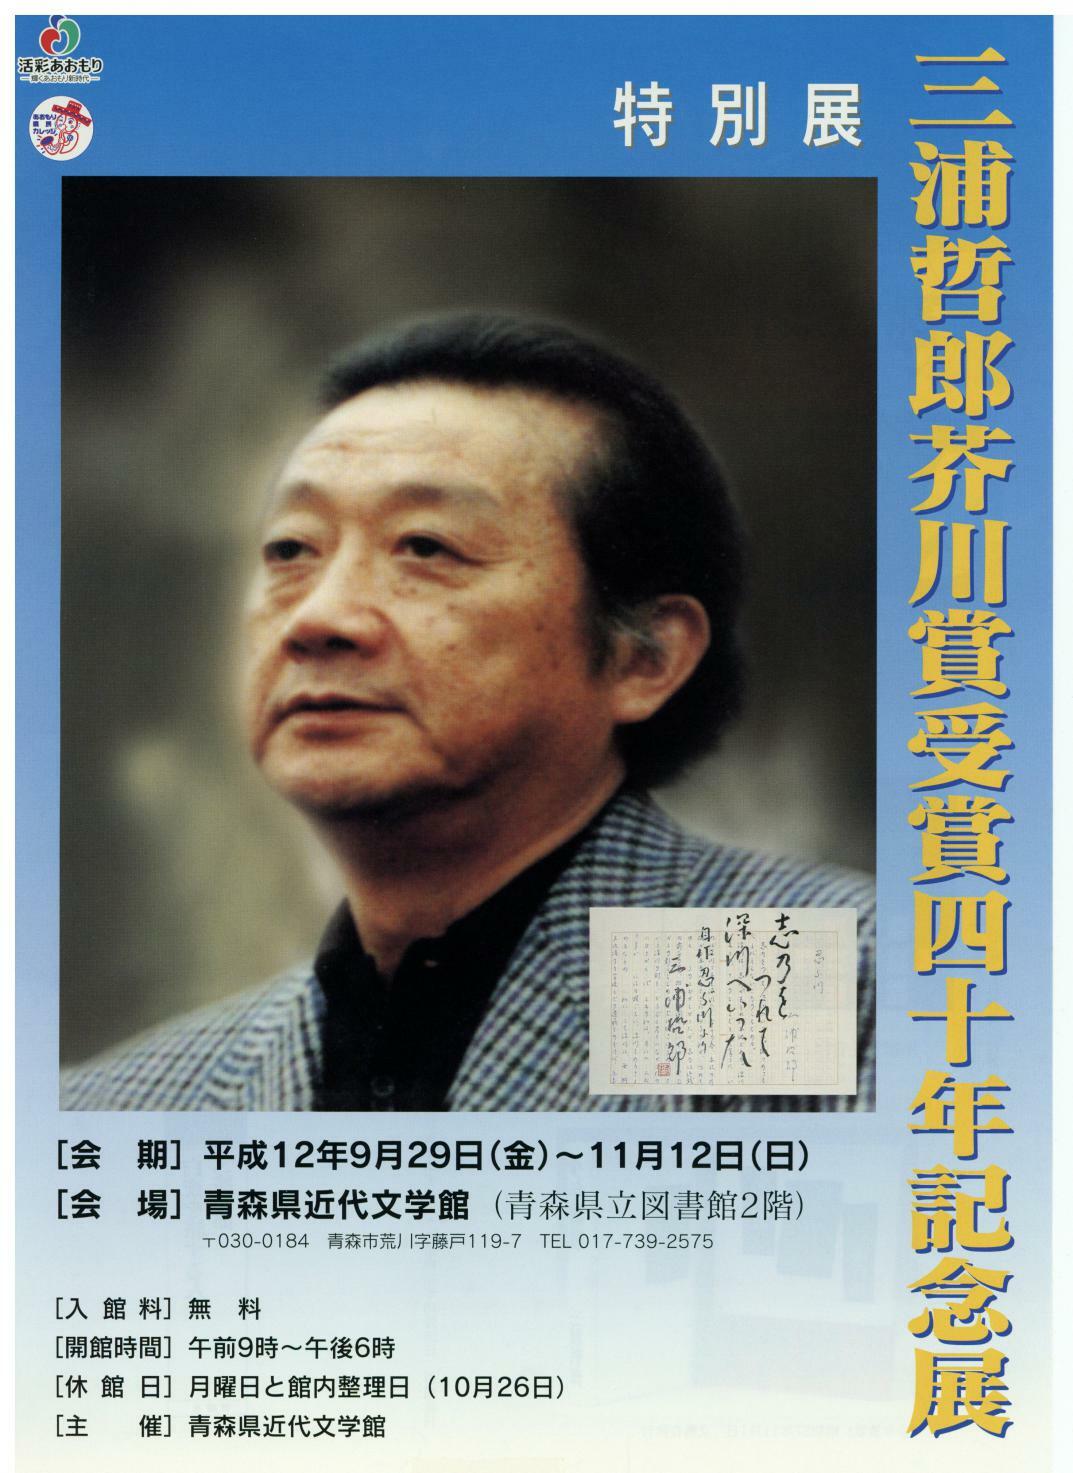 三浦哲郎芥川賞受賞四十年記念展フライヤー表面の画像